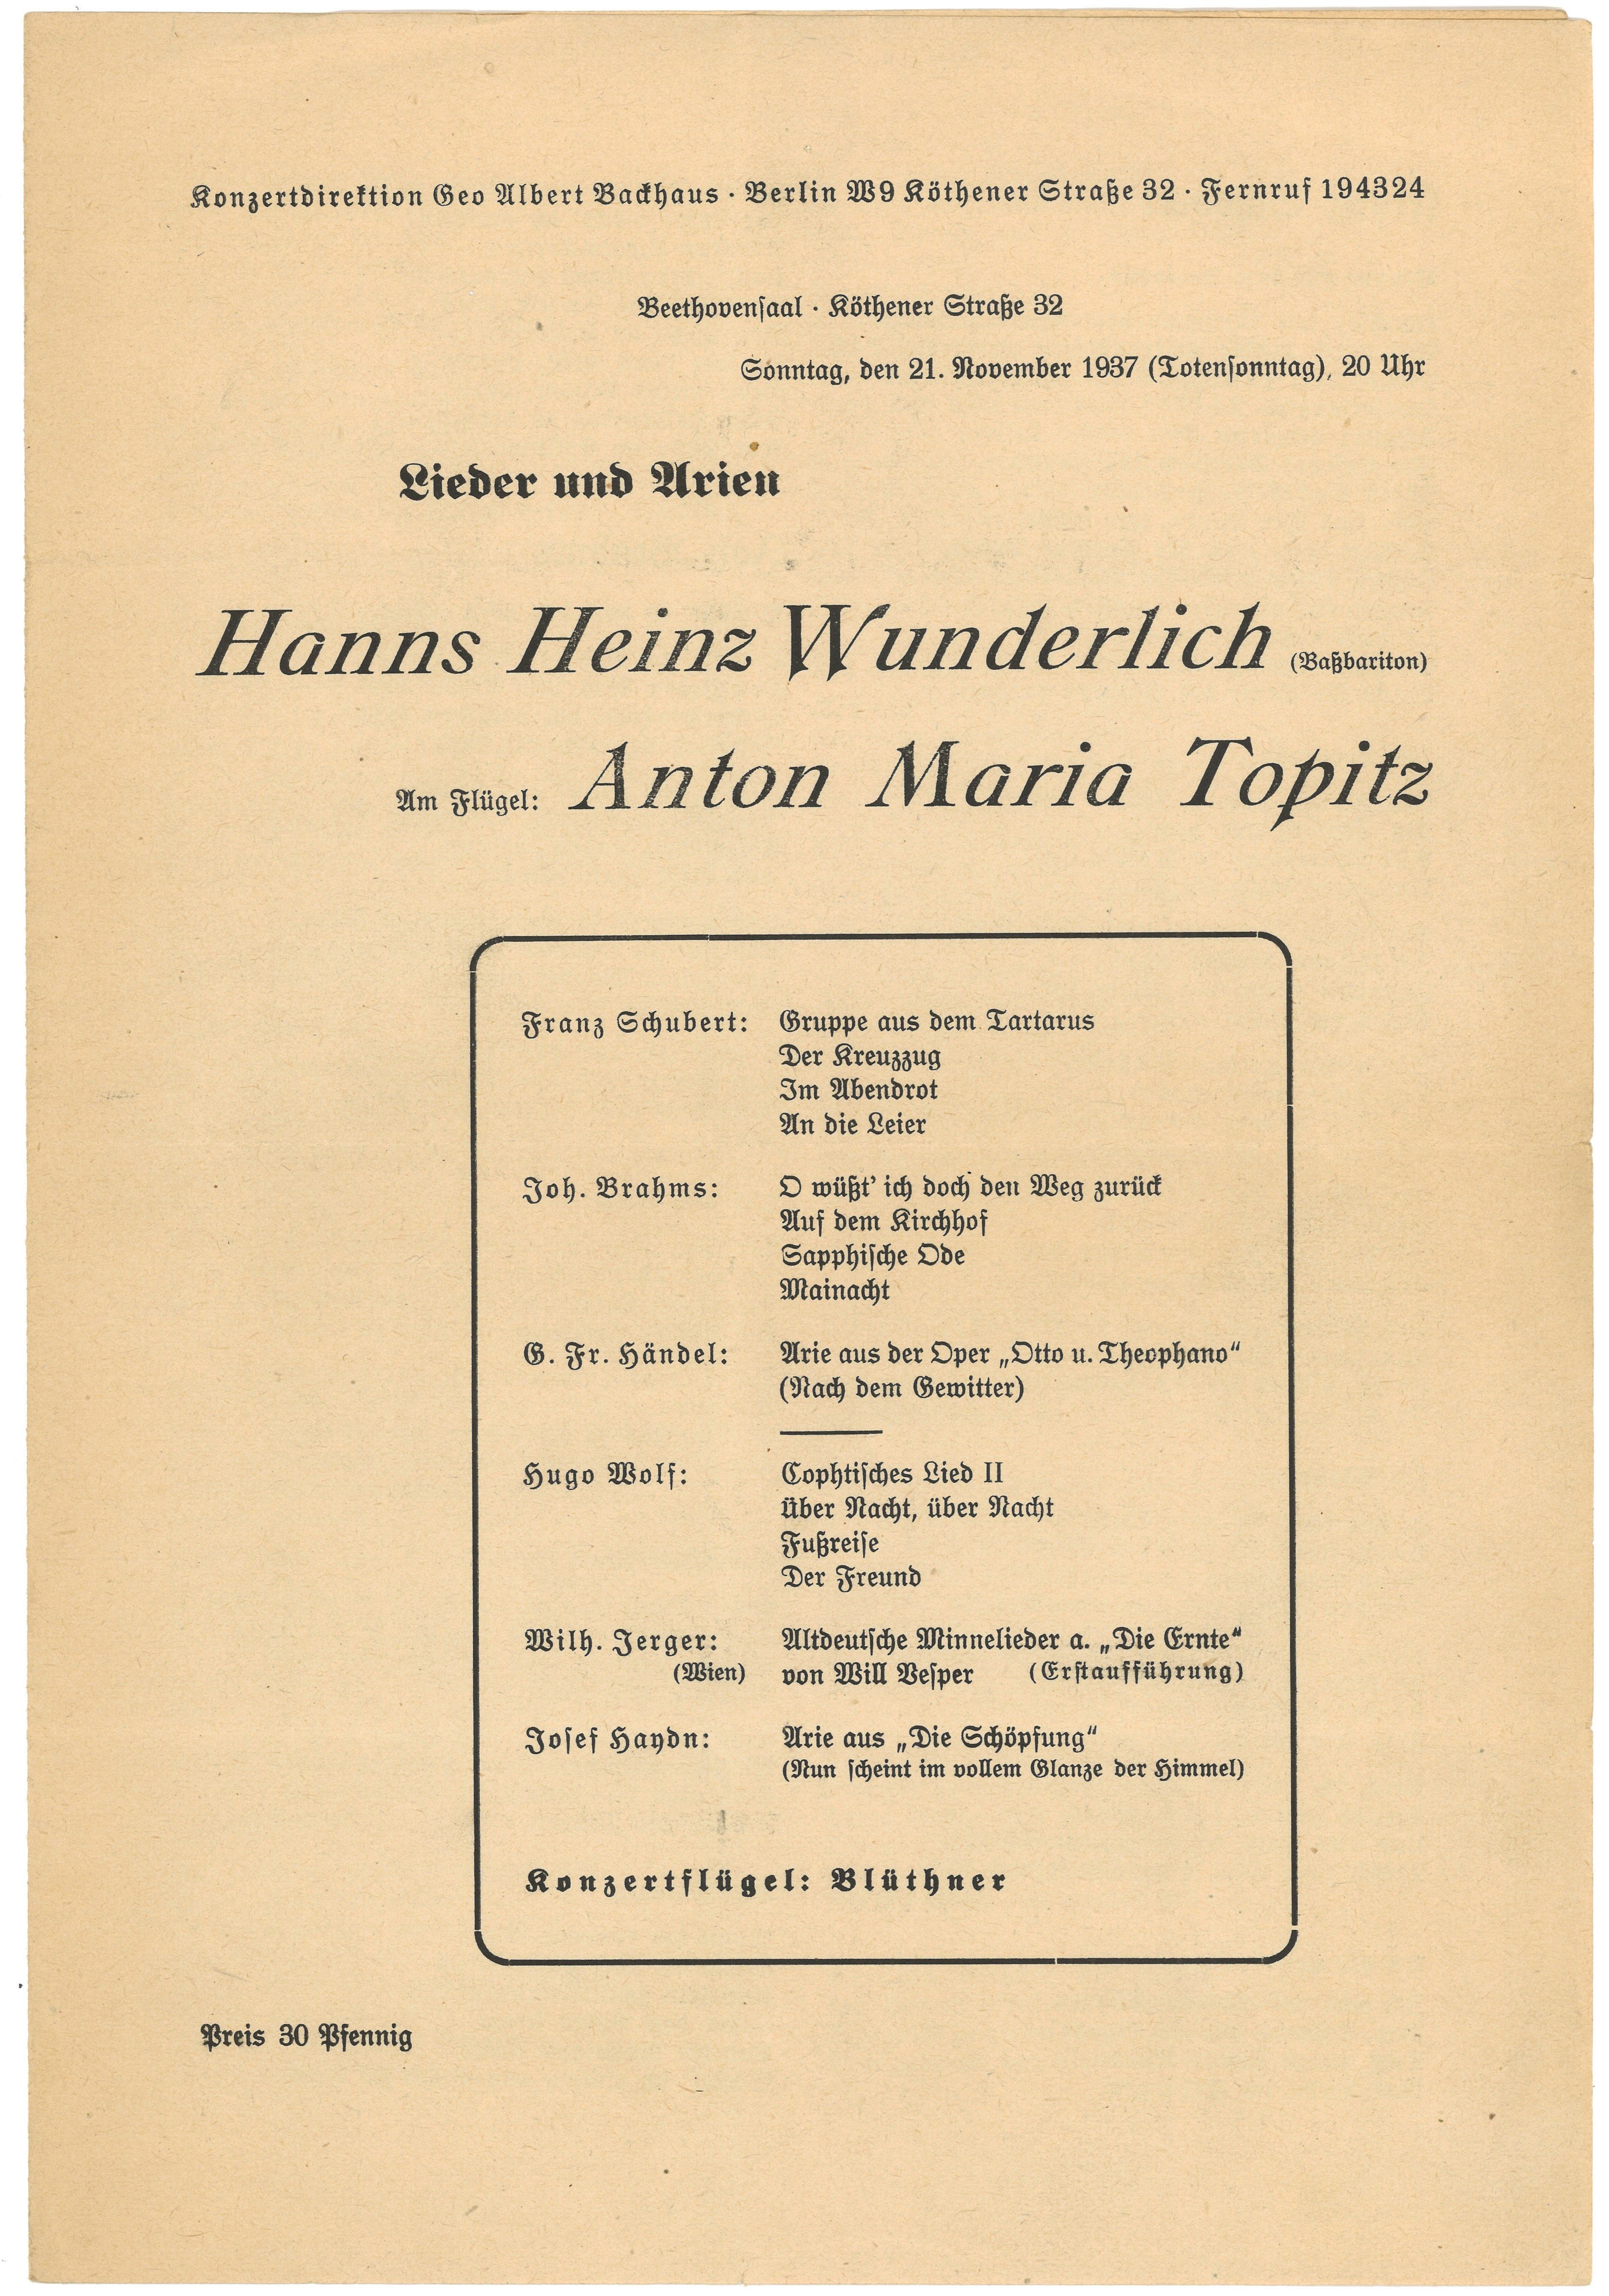 Programm eines Liederabends mit Hanns Heinz Wunderlich und Anton Maria Topitz am 21. November 1937 im Beethovensaal in Berlin (Landesgeschichtliche Vereinigung für die Mark Brandenburg e.V., Archiv CC BY)